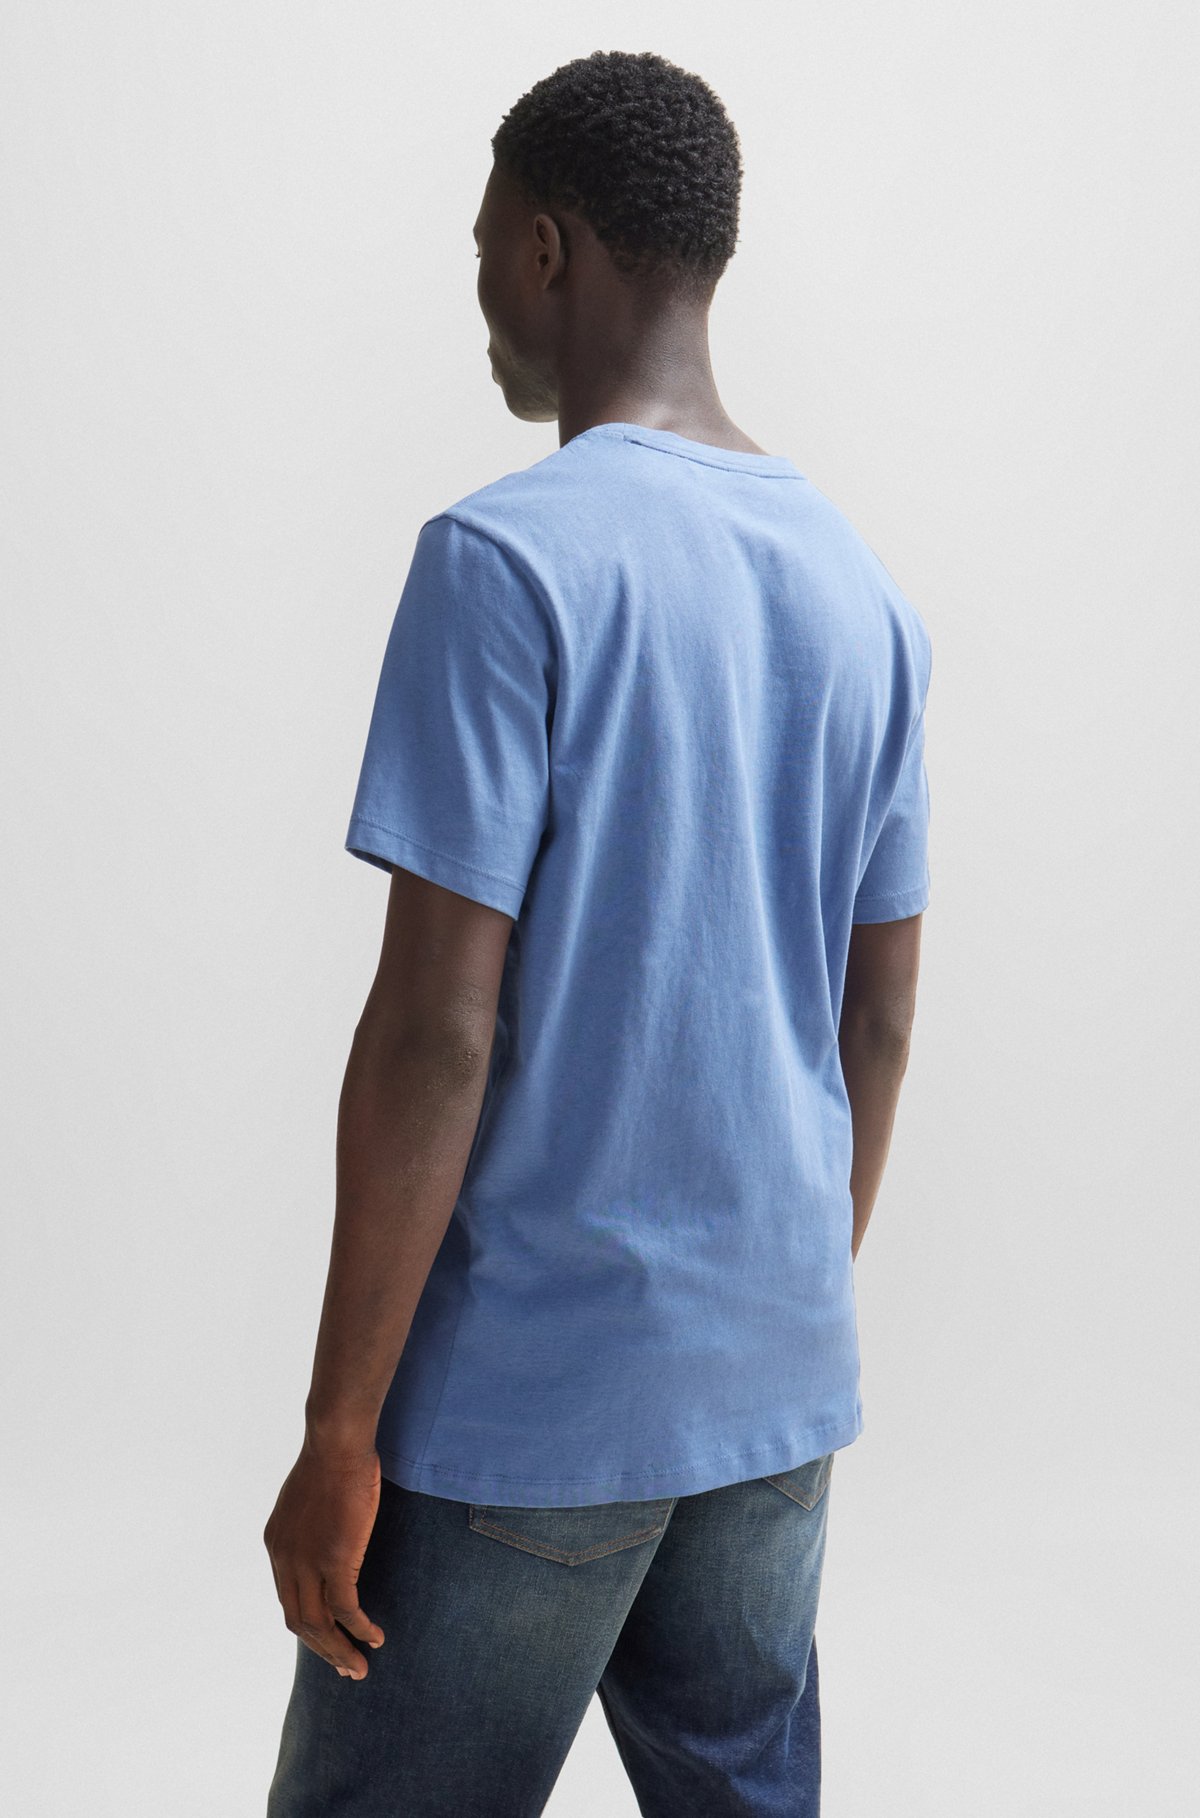 Relaxed-Fit T-Shirt aus Baumwoll-Jersey mit Logo-Aufnäher, Hellblau